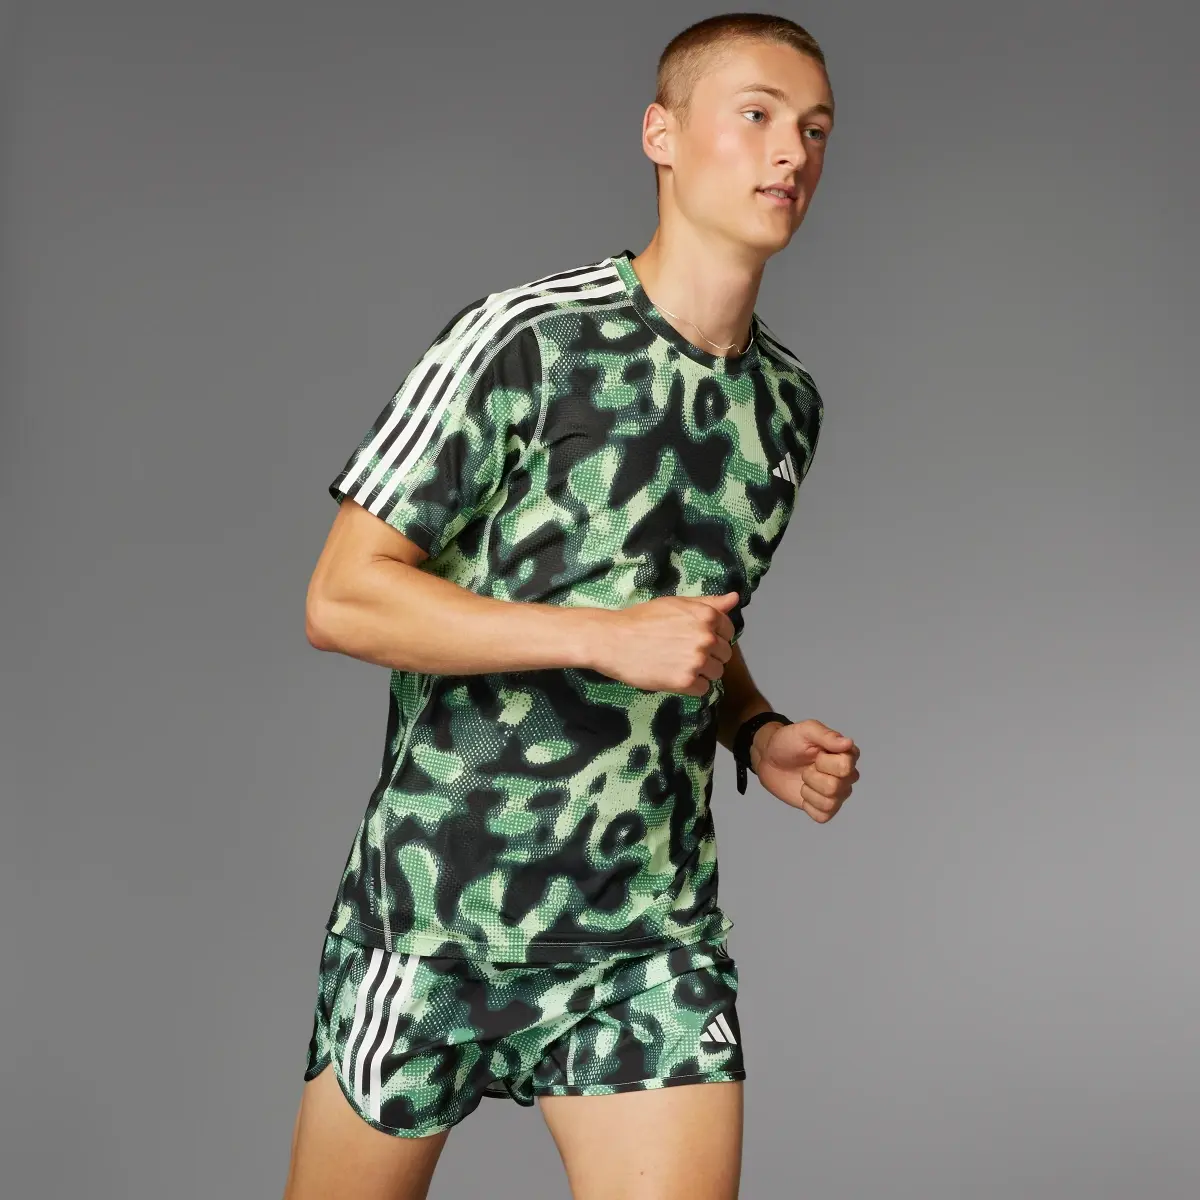 Adidas Own the Run 3-Stripes Allover Print Shorts. 3